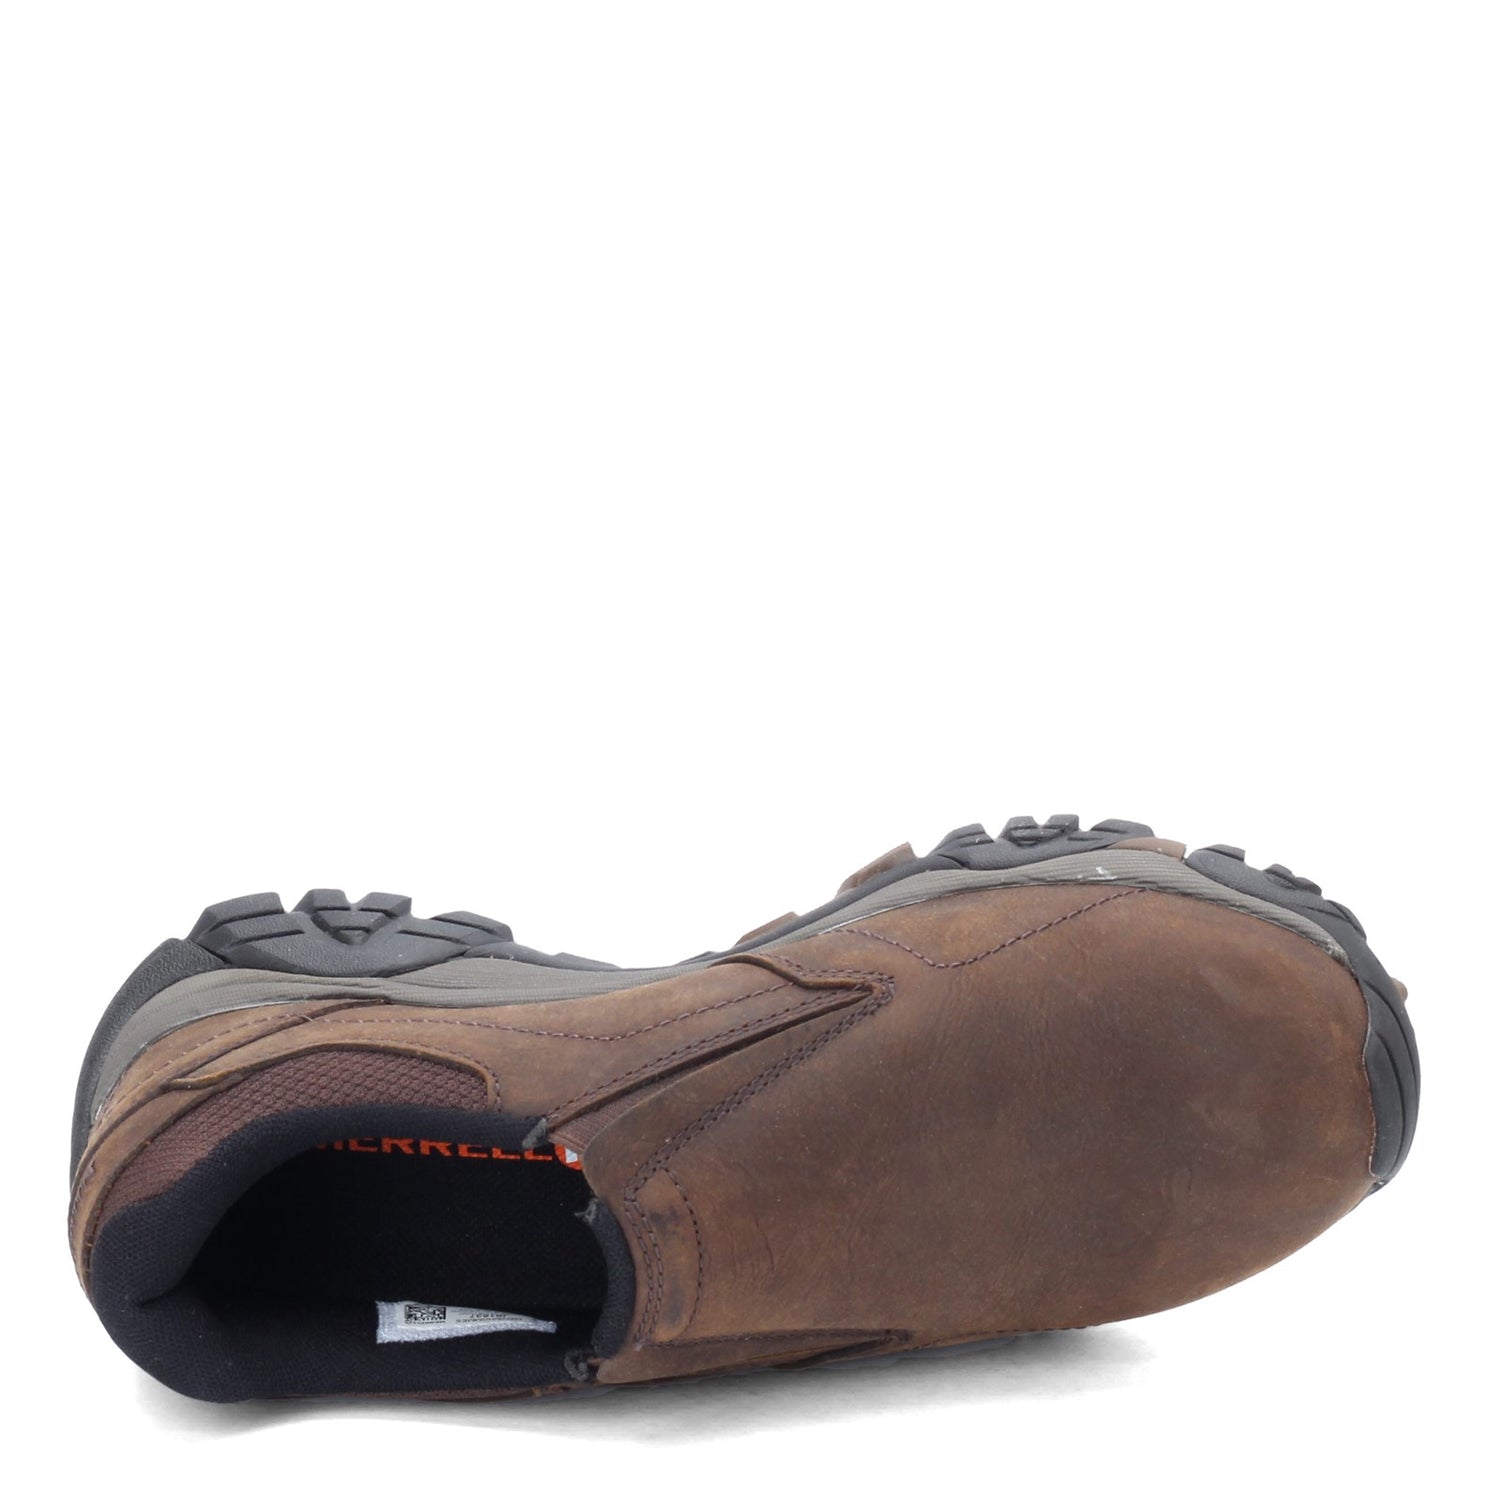 Peltz Shoes  Men's Merrell Moab Adventure Moc Slip-On - Wide Width DARK EARTH J91837W